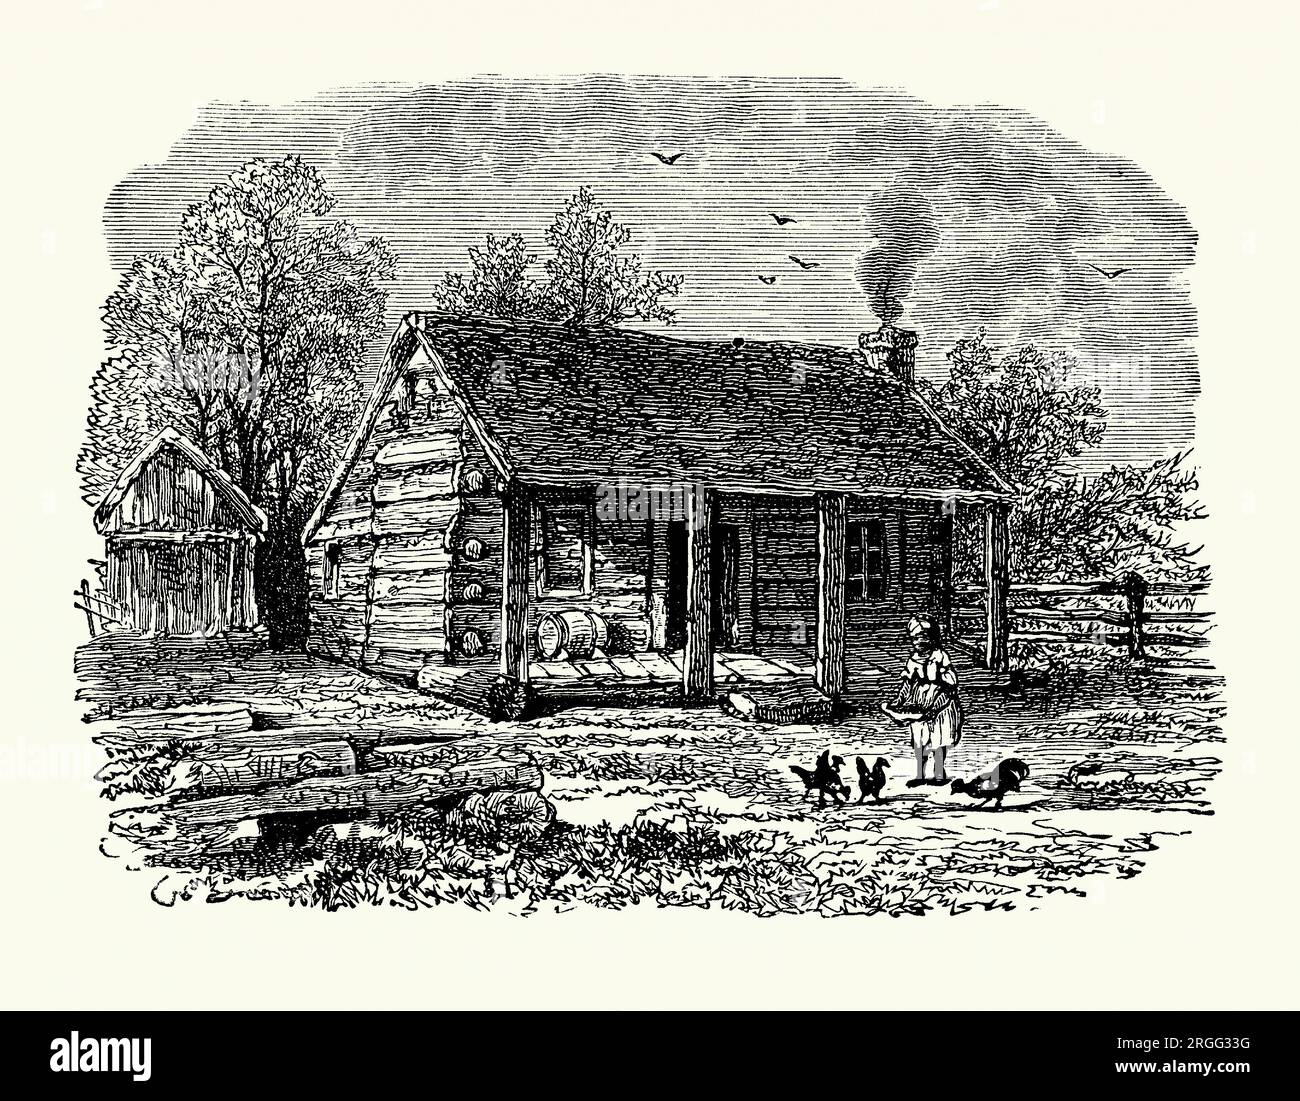 Une ancienne gravure de la cabane en rondins, la maison d'Abraham Lincoln de l'âge de sept (1816) jusqu'à ses 12 ans, Gentryville, Indiana du sud, USA au début des années 1800 Il est tiré d'un livre d'histoire américain de 1895. L'Indiana était un territoire «libre» (non esclavagiste) et la famille s'est installée dans une zone forestière. Abraham Lincoln (1809-1865) était un avocat, homme politique et homme d'État américain qui a été le 16e président des États-Unis de 1861 jusqu'à son assassinat en 1865. Lincoln mène l'Union pendant la guerre de Sécession. Banque D'Images